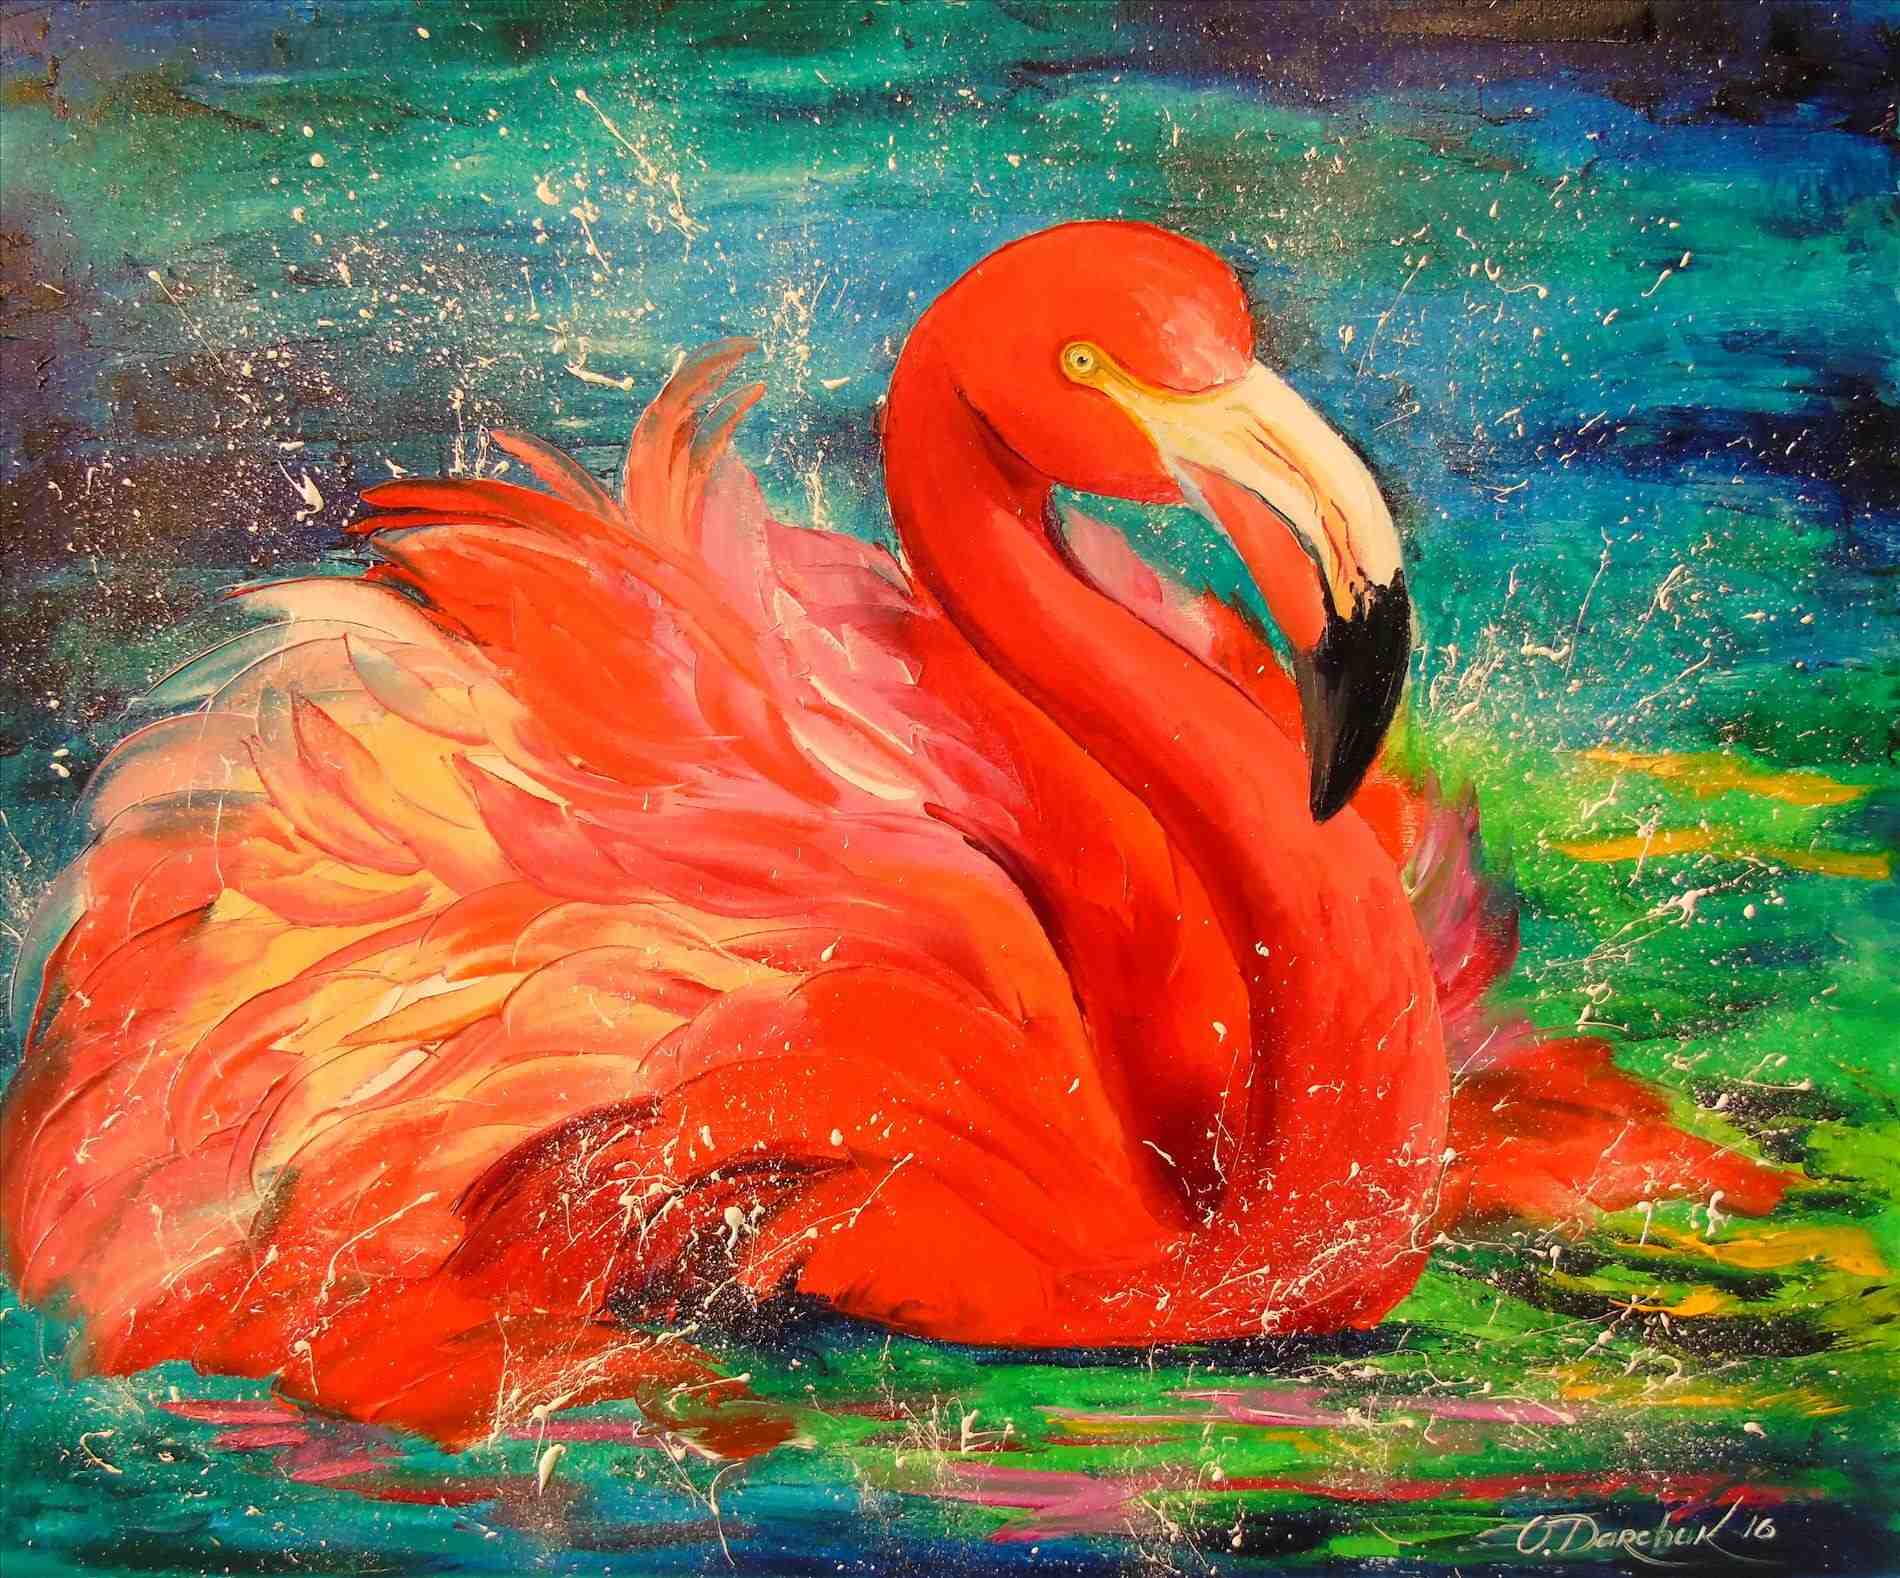 oilrhpinterestcouk artflutecom olha darchuk flamingorhartflutecom artflutecom Flamingo Oil Painting oil painting by olha darchuk flamingorhartflutecom mikaylaus flamingo on canvas board x painted